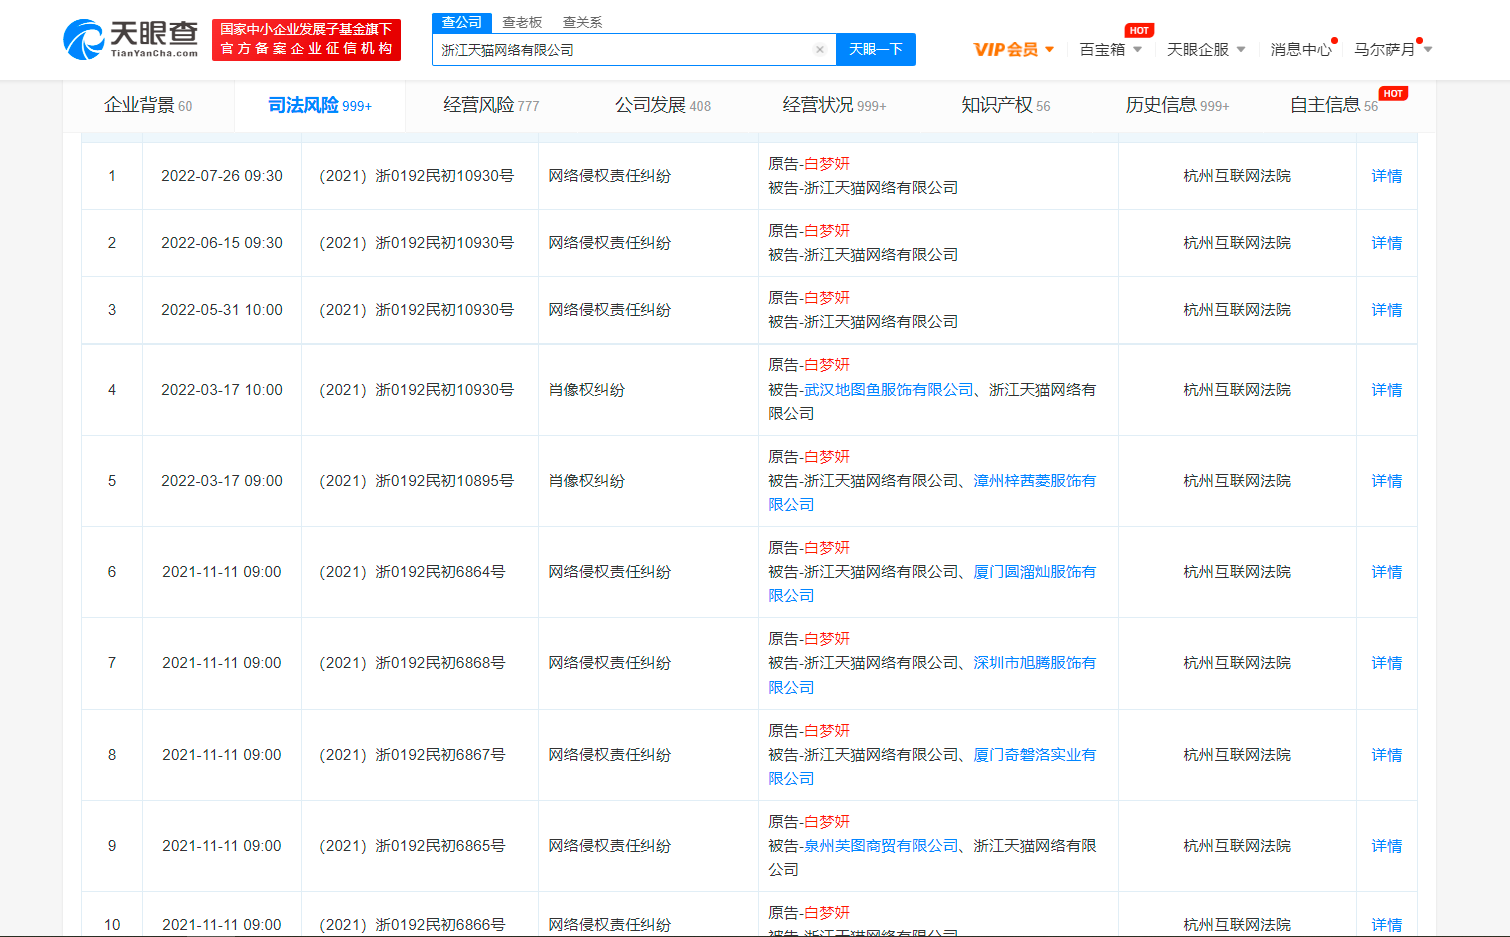 白鹿起诉更美APP侵权 将于7月12日在北京互联网法院开庭